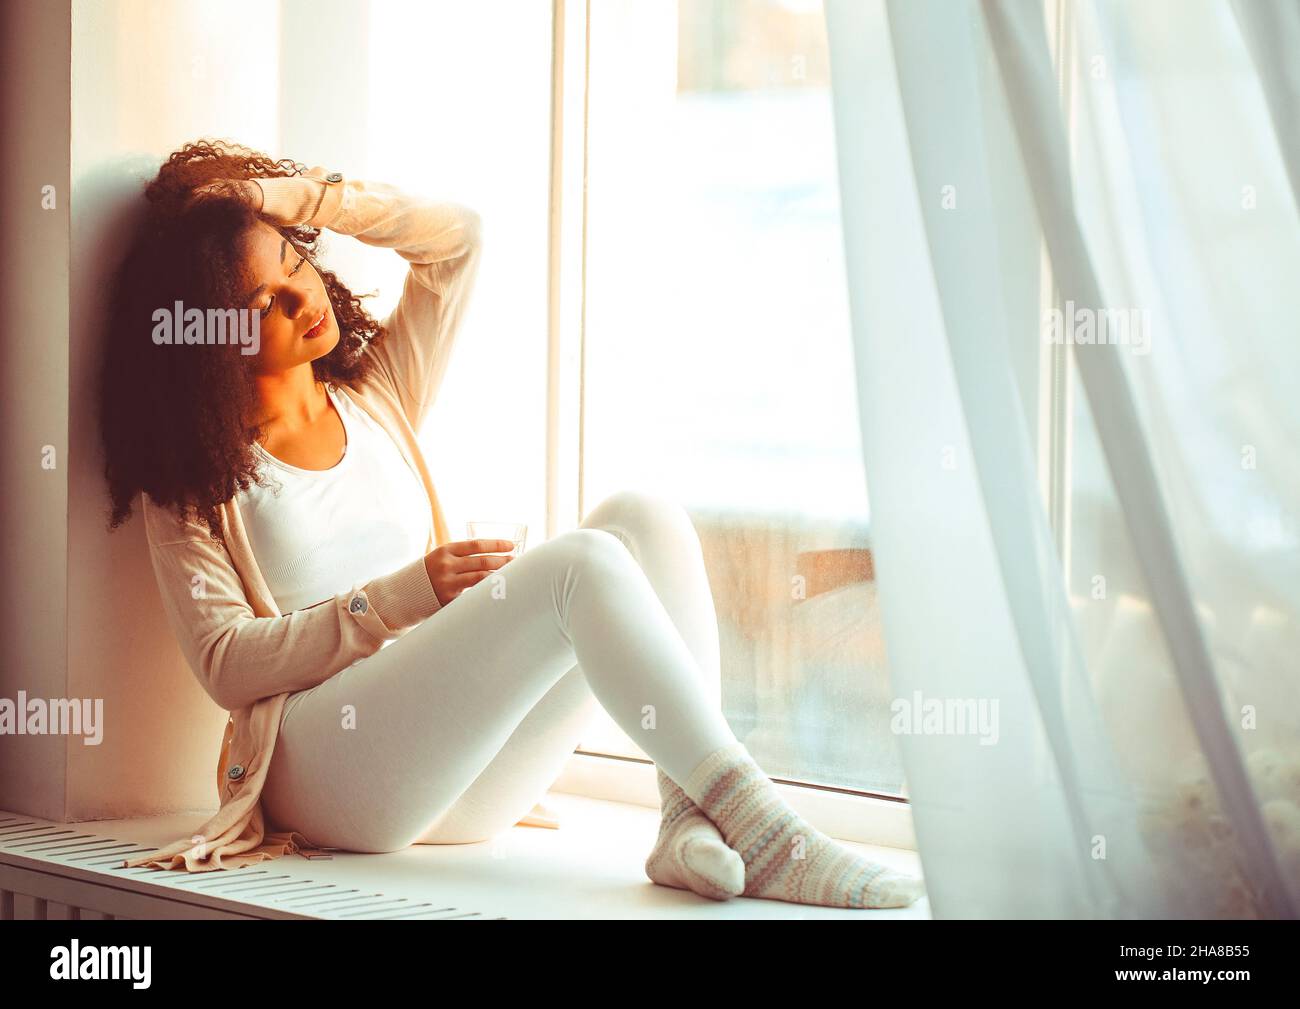 Feliz relajado africano americano etnia chica en el hogar sentado en el alféizar de la ventana contra el telón de fondo de cortinas revoloteando de viento ligero, feliz afro Foto de stock